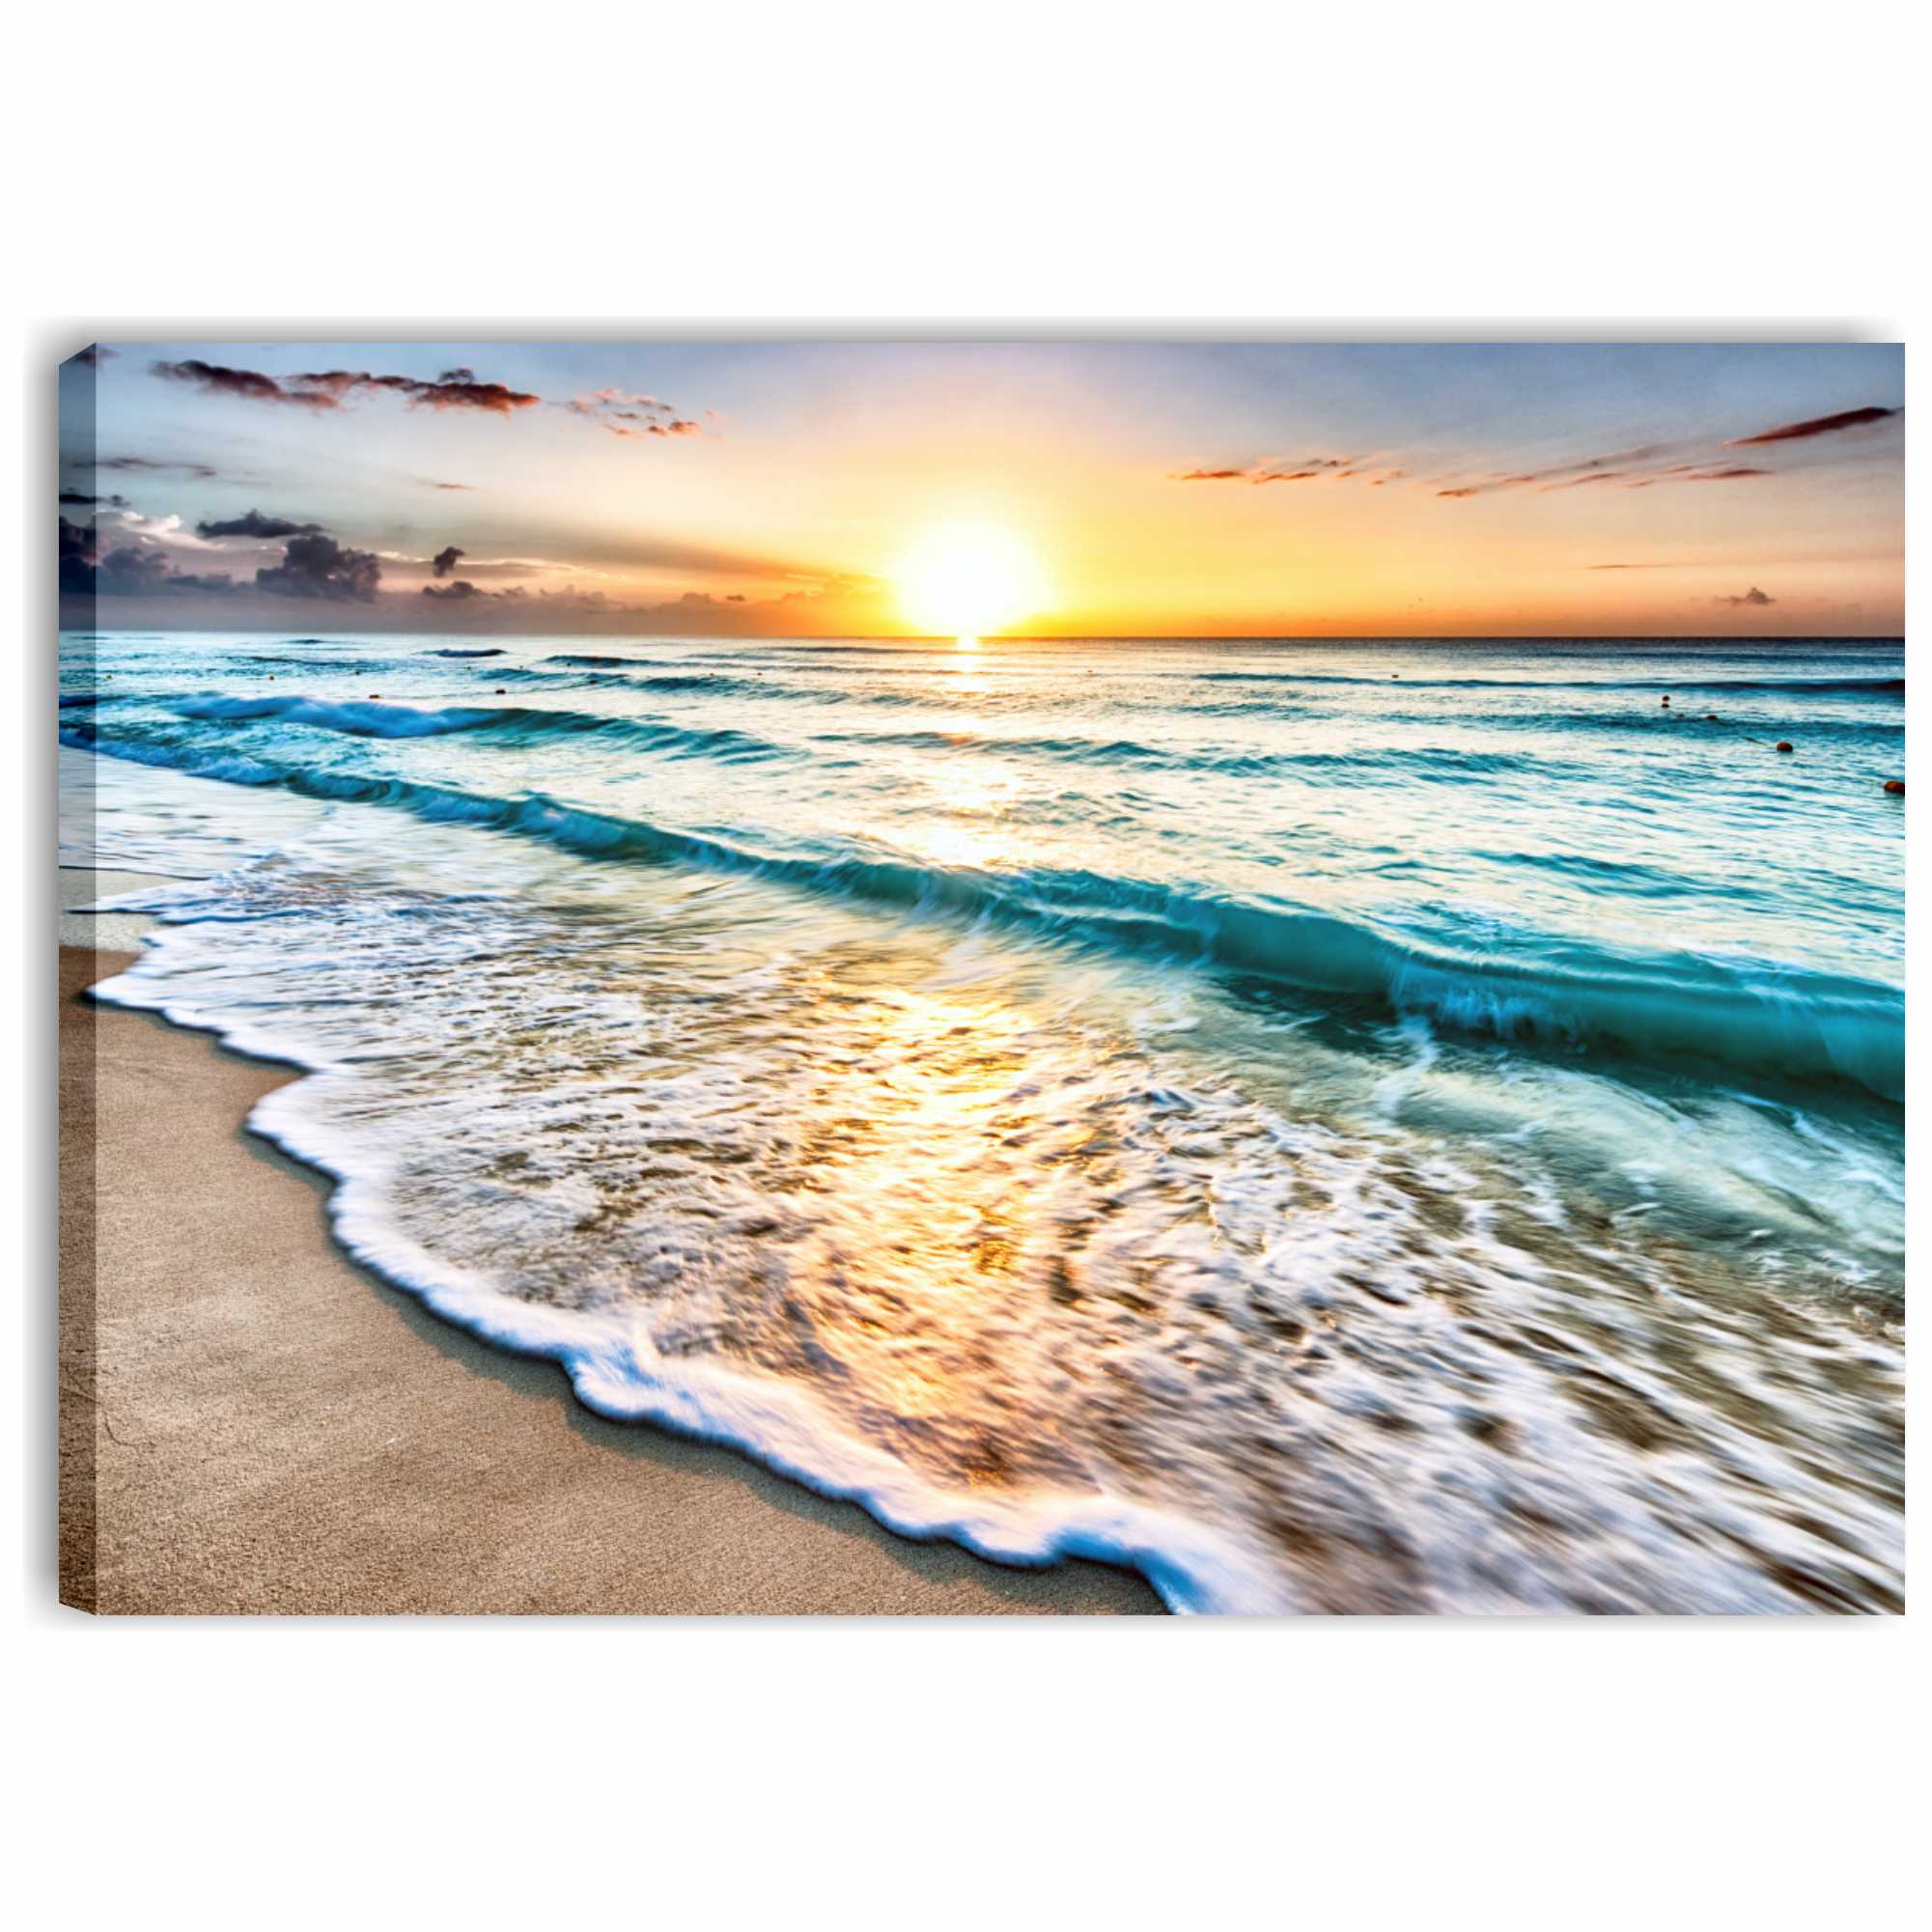 Collezione Spiagge Stampa Incorniciata con Spessore di 2cm Altre Dimensioni Disponibili Decorazione Moderna Quadro su Tela Sea Sunset Window 100x75cm PICANOVA 